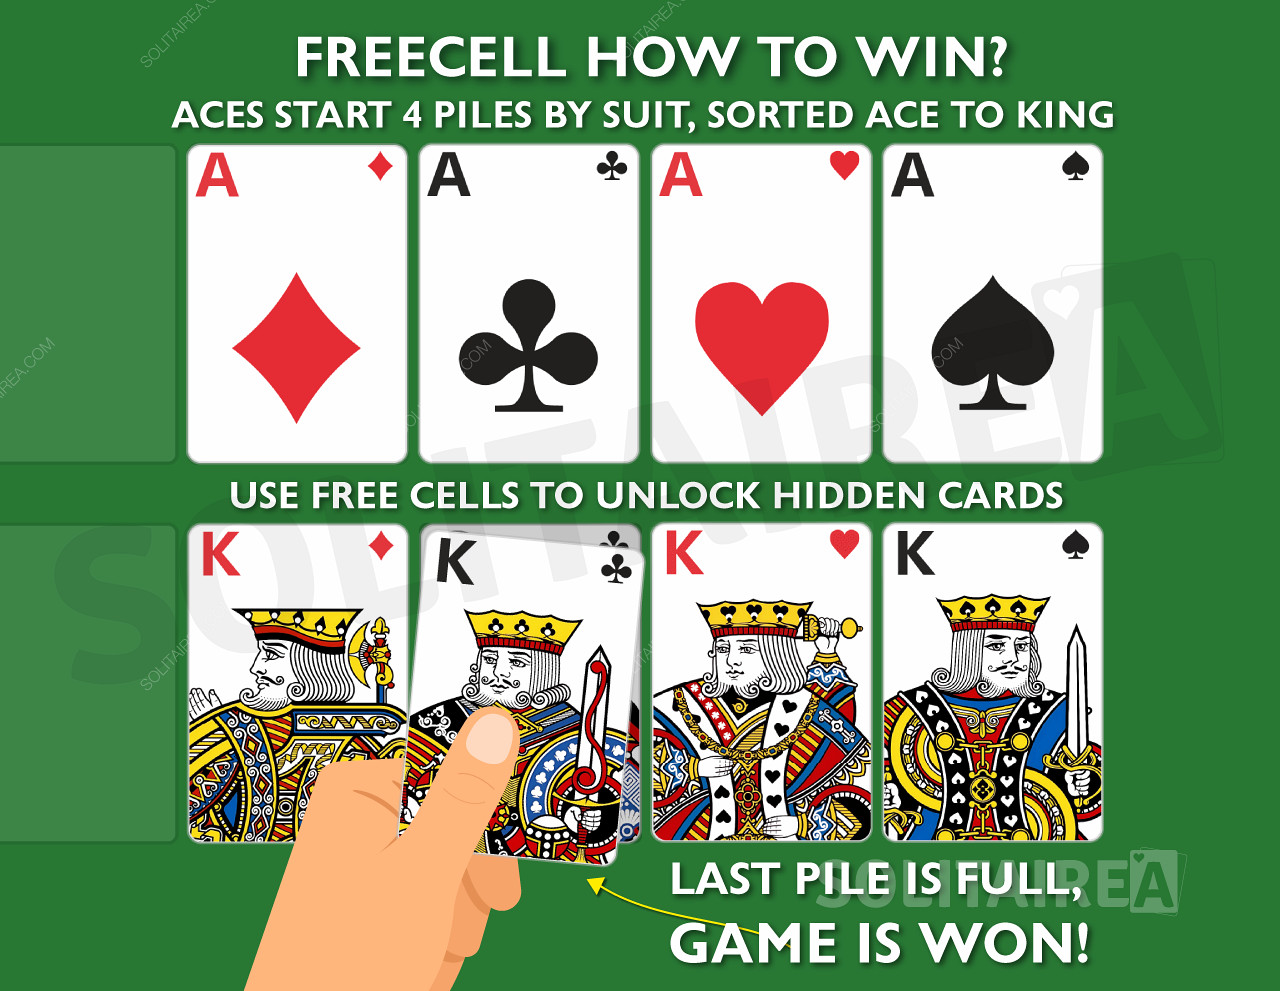 Як перемогти у грі? Зберіть 4 стопки карт однієї масті, відсортованих від туза до короля.